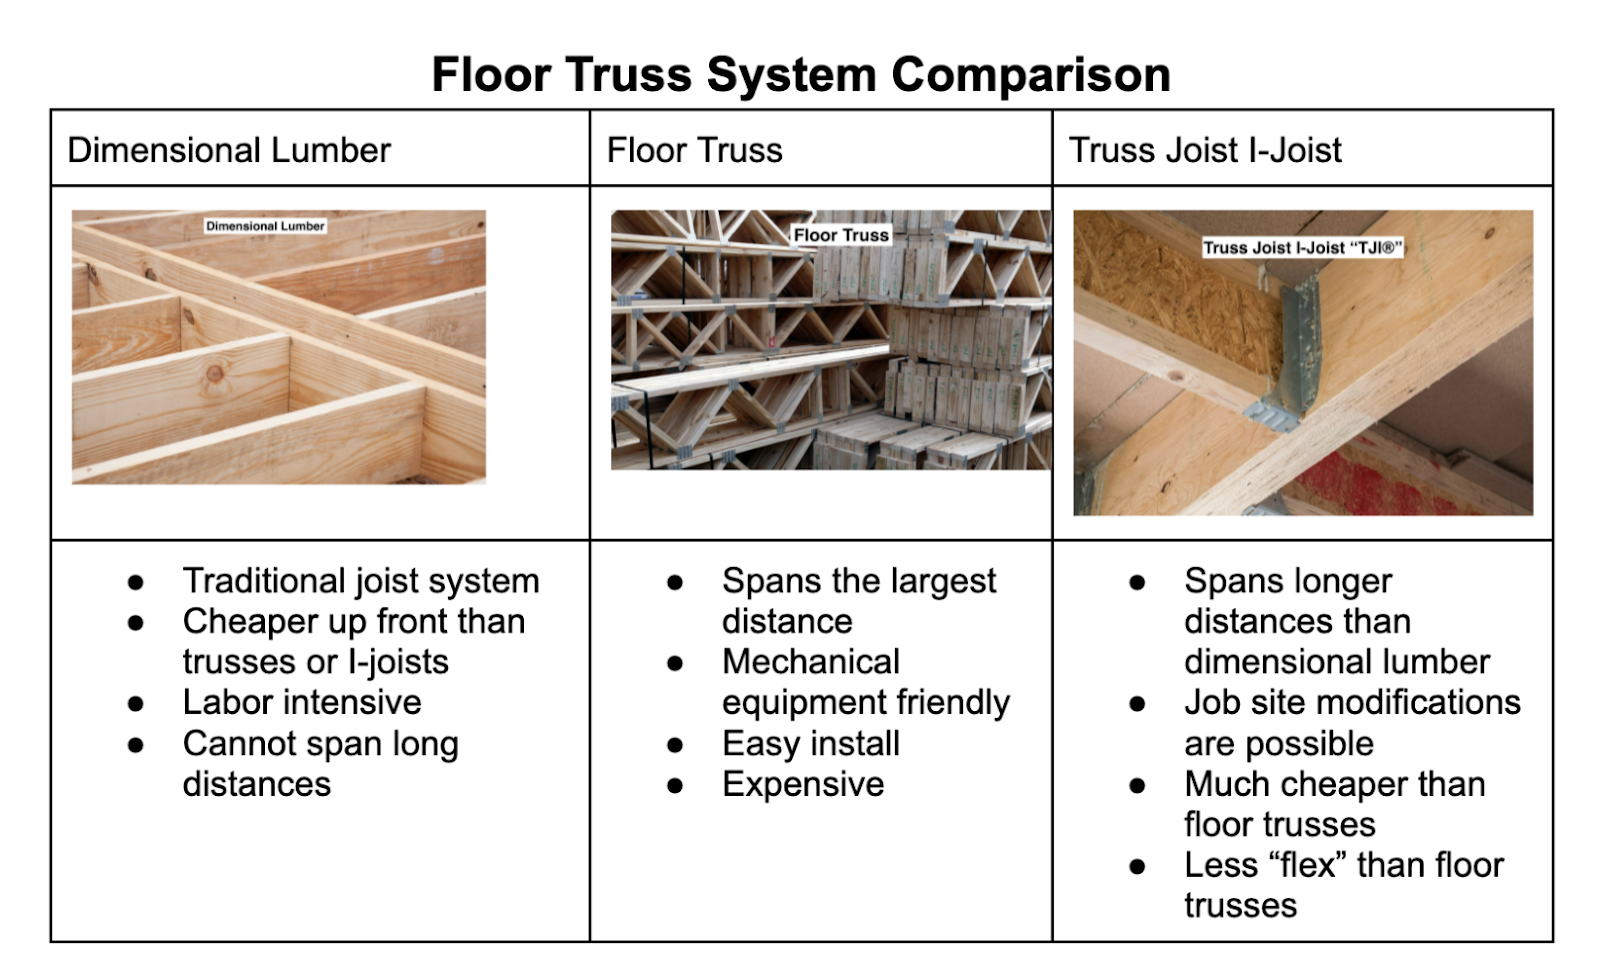 Floor truss system